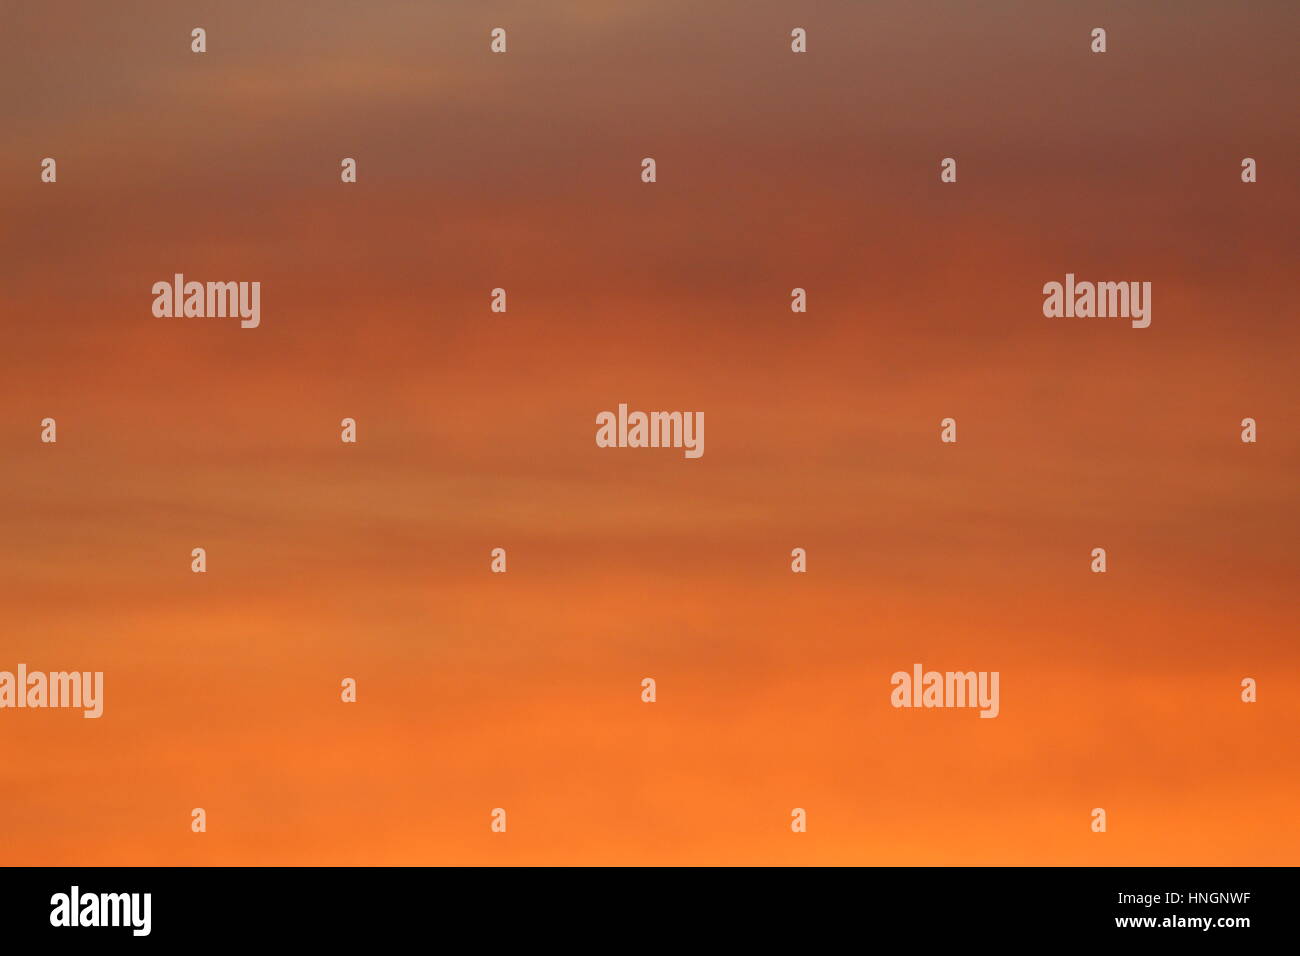 Smooth Orange Sunset or slideshow background Stock Photo